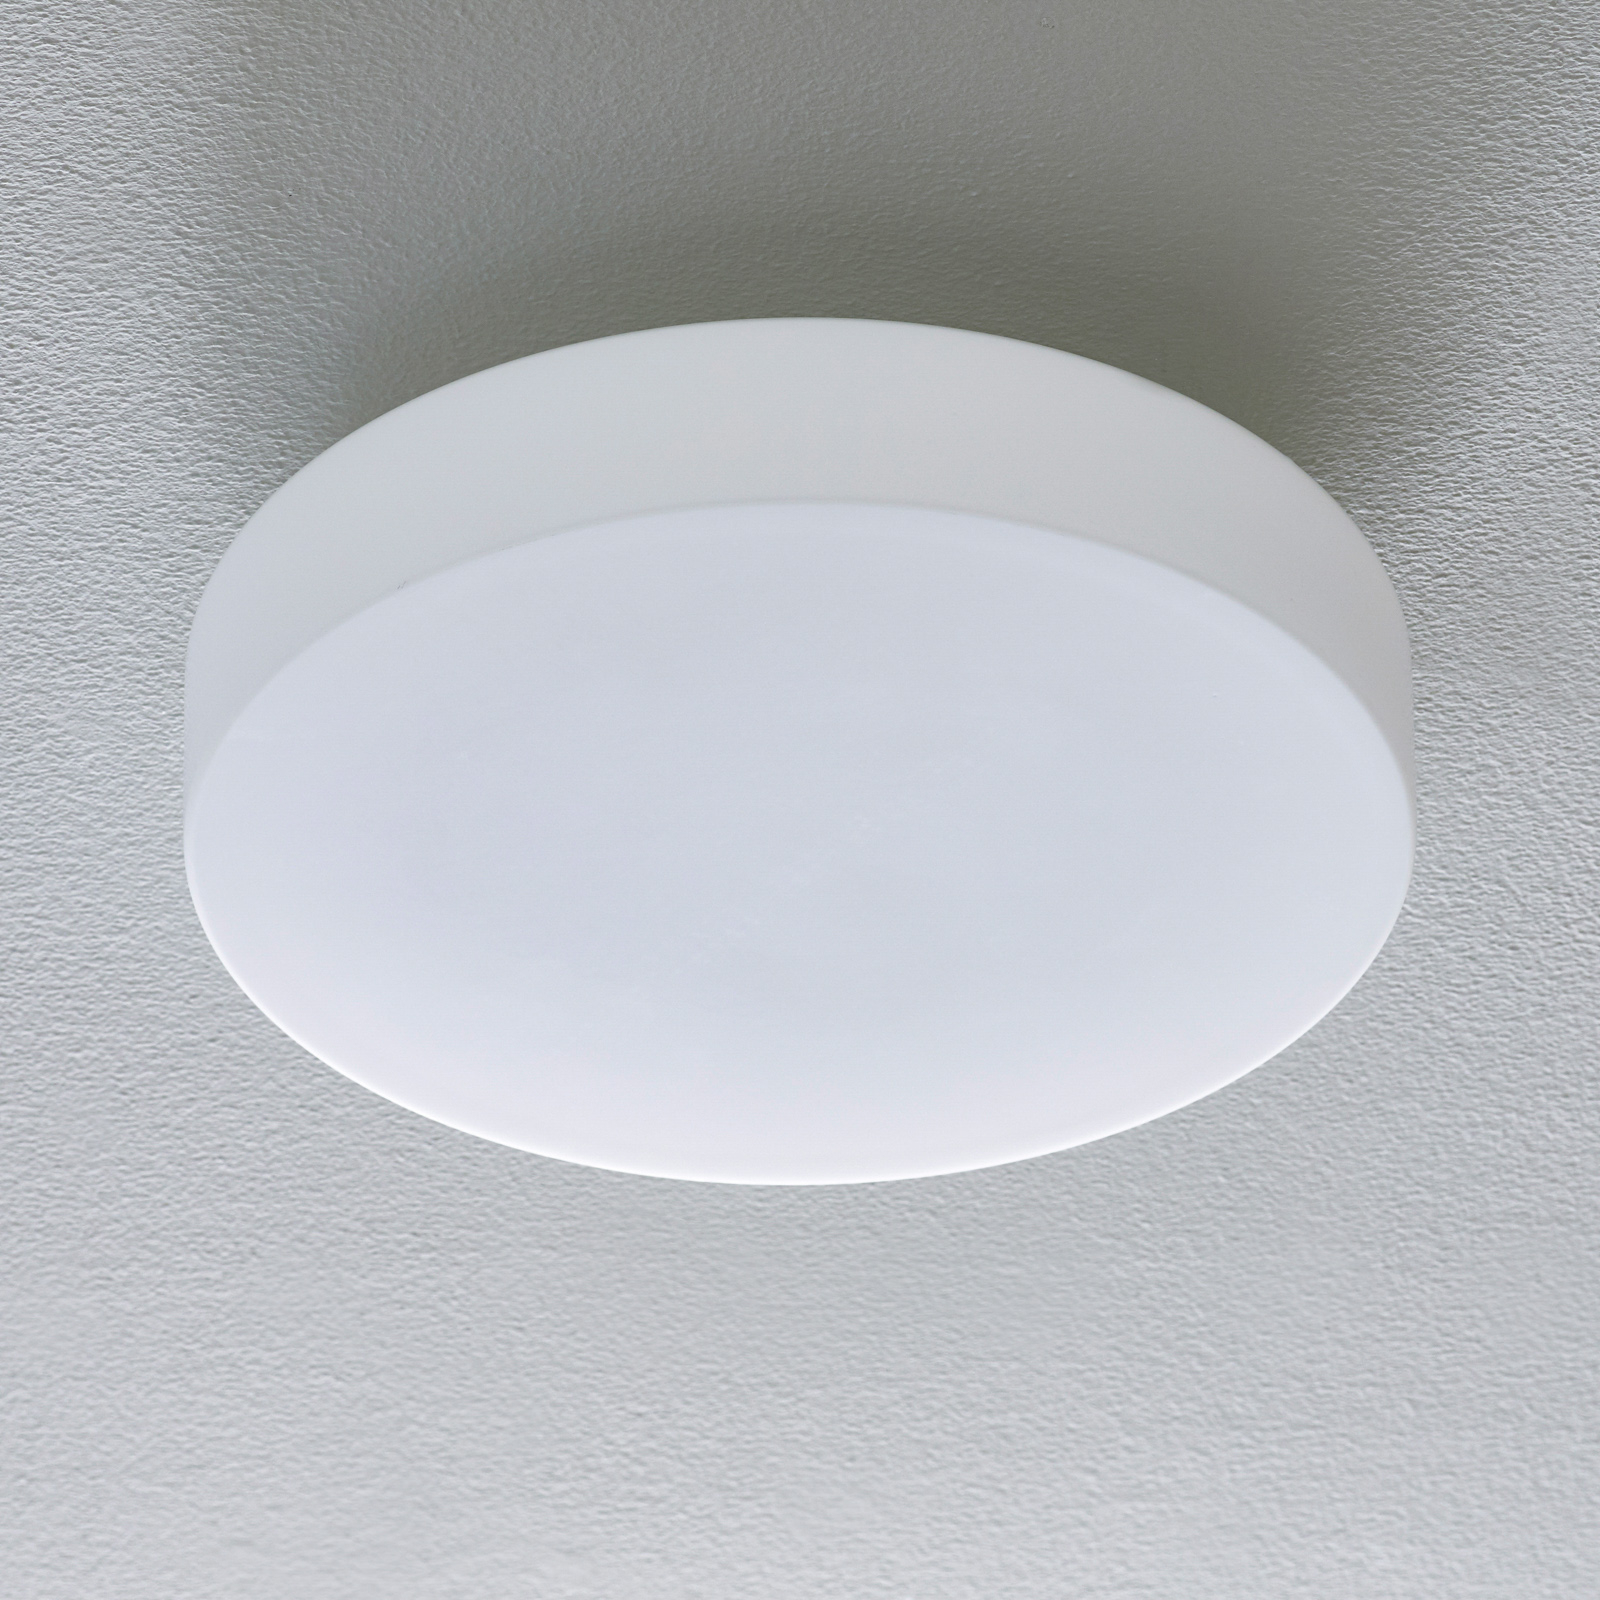 BEGA 50651 LED ceiling light opal 3,000 K Ø 34 cm